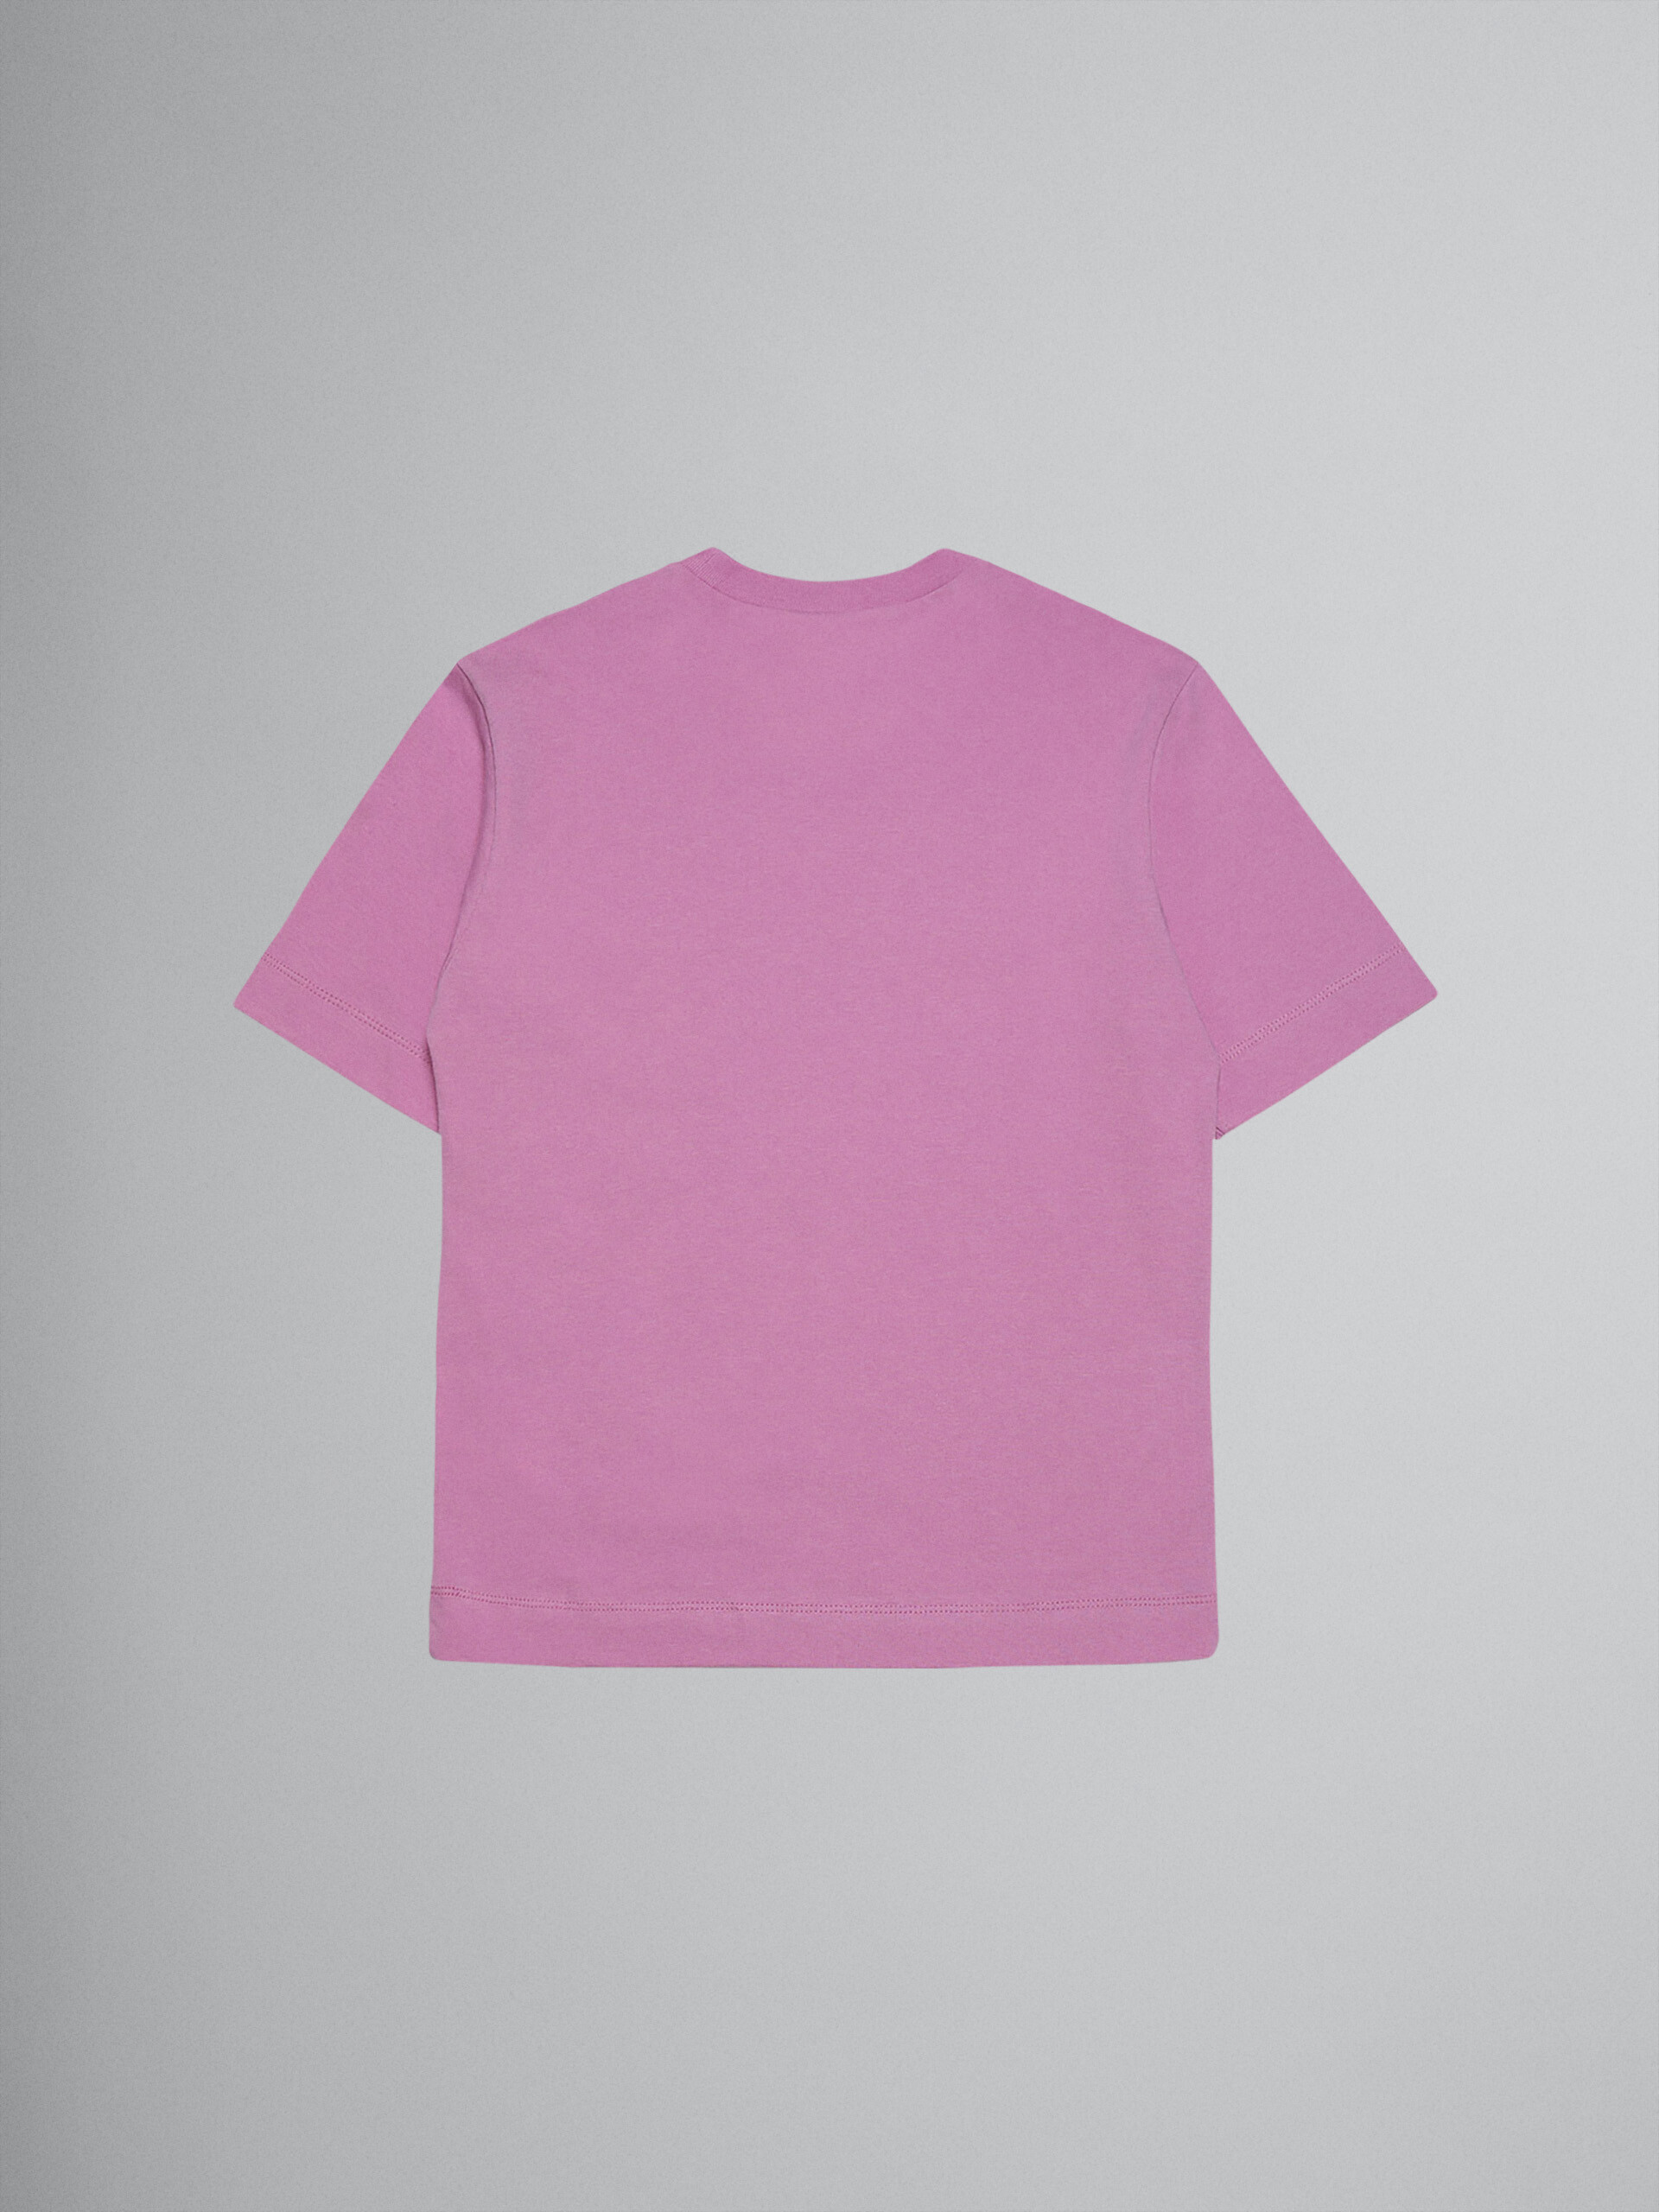 Camiseta de jersey de algodón rosa "M" - Camisetas - Image 2